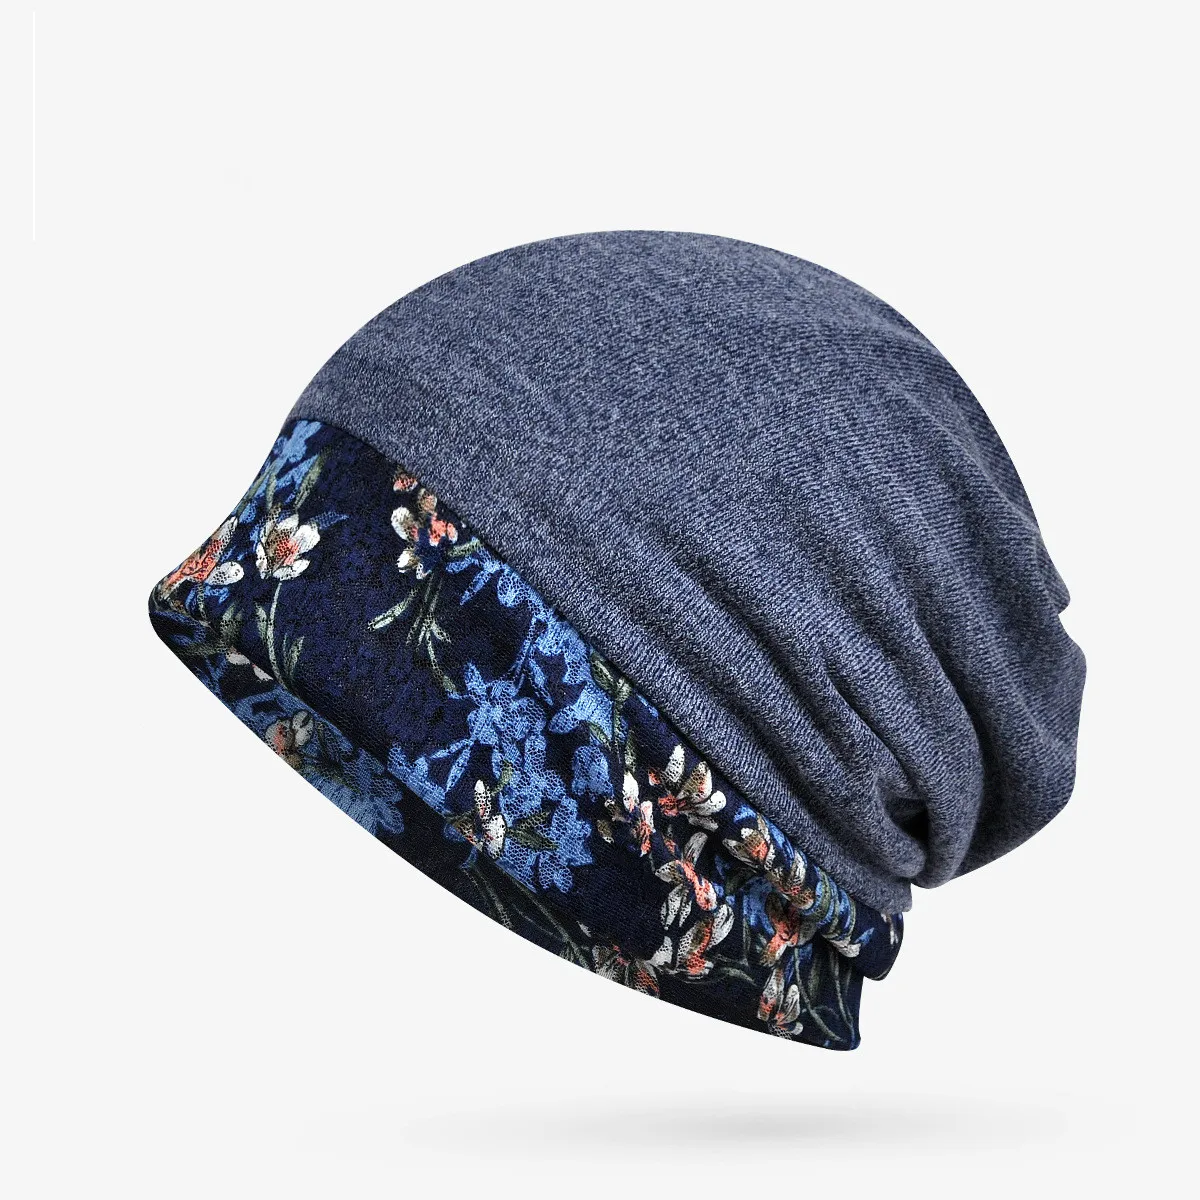 COKK тюрбан, Женская кружевная шапочка с цветком, шапки для женщин, женские хлопковые шапки, мягкие эластичные шапки, мешковатая шапка